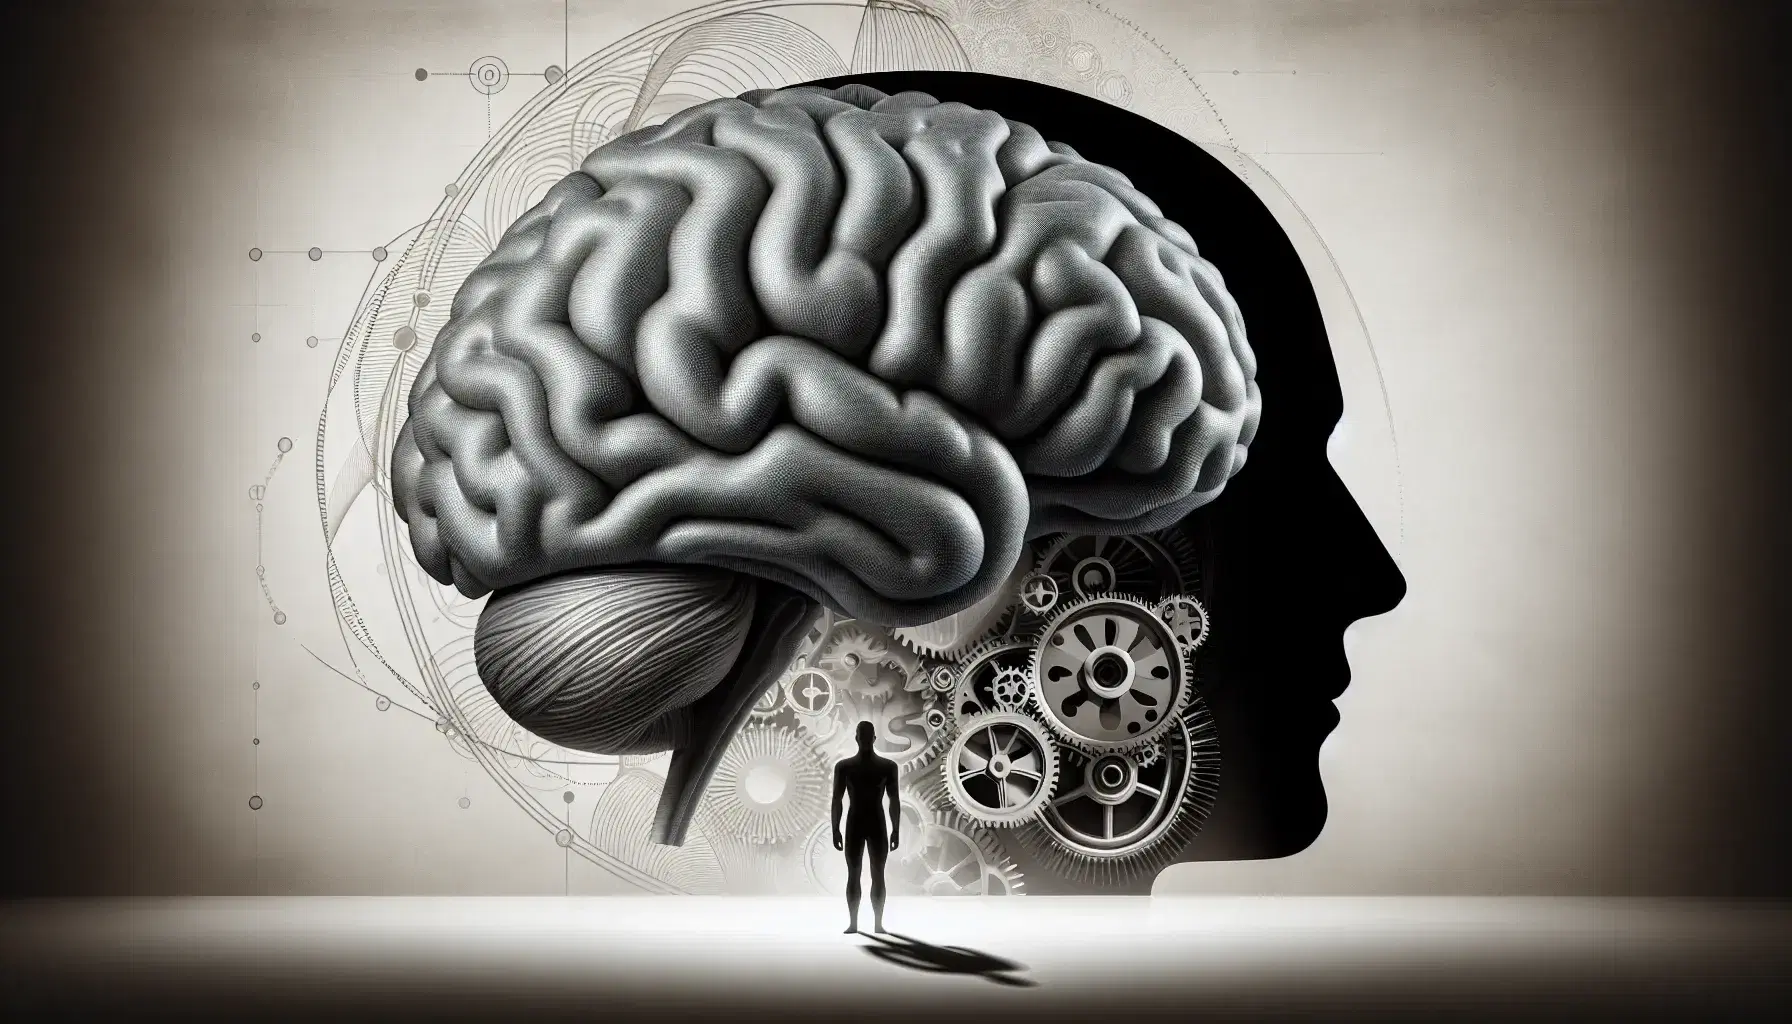 Cerebro humano detallado en tonos grises con figura en silueta a la izquierda y engranajes en movimiento a la derecha, simbolizando la conexión entre mente y mecánica.